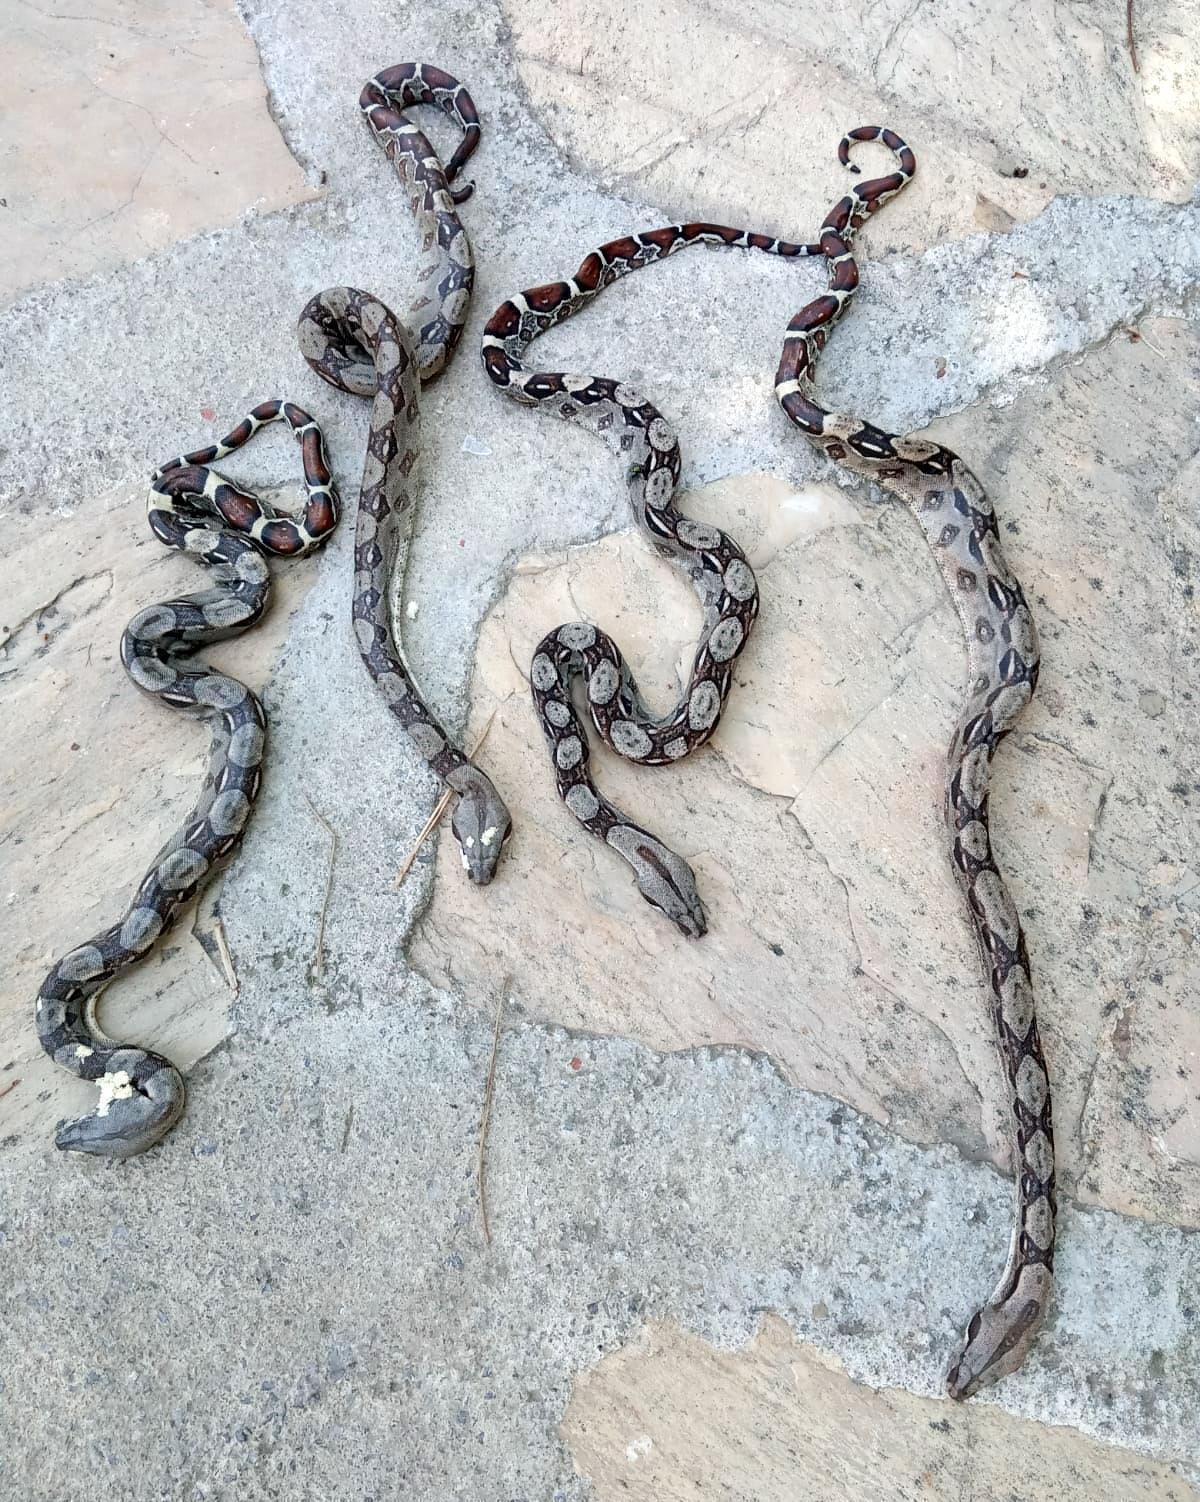 Antalyada dolaşan zehirli yılanlar vatandaşları tedirgin ediyor